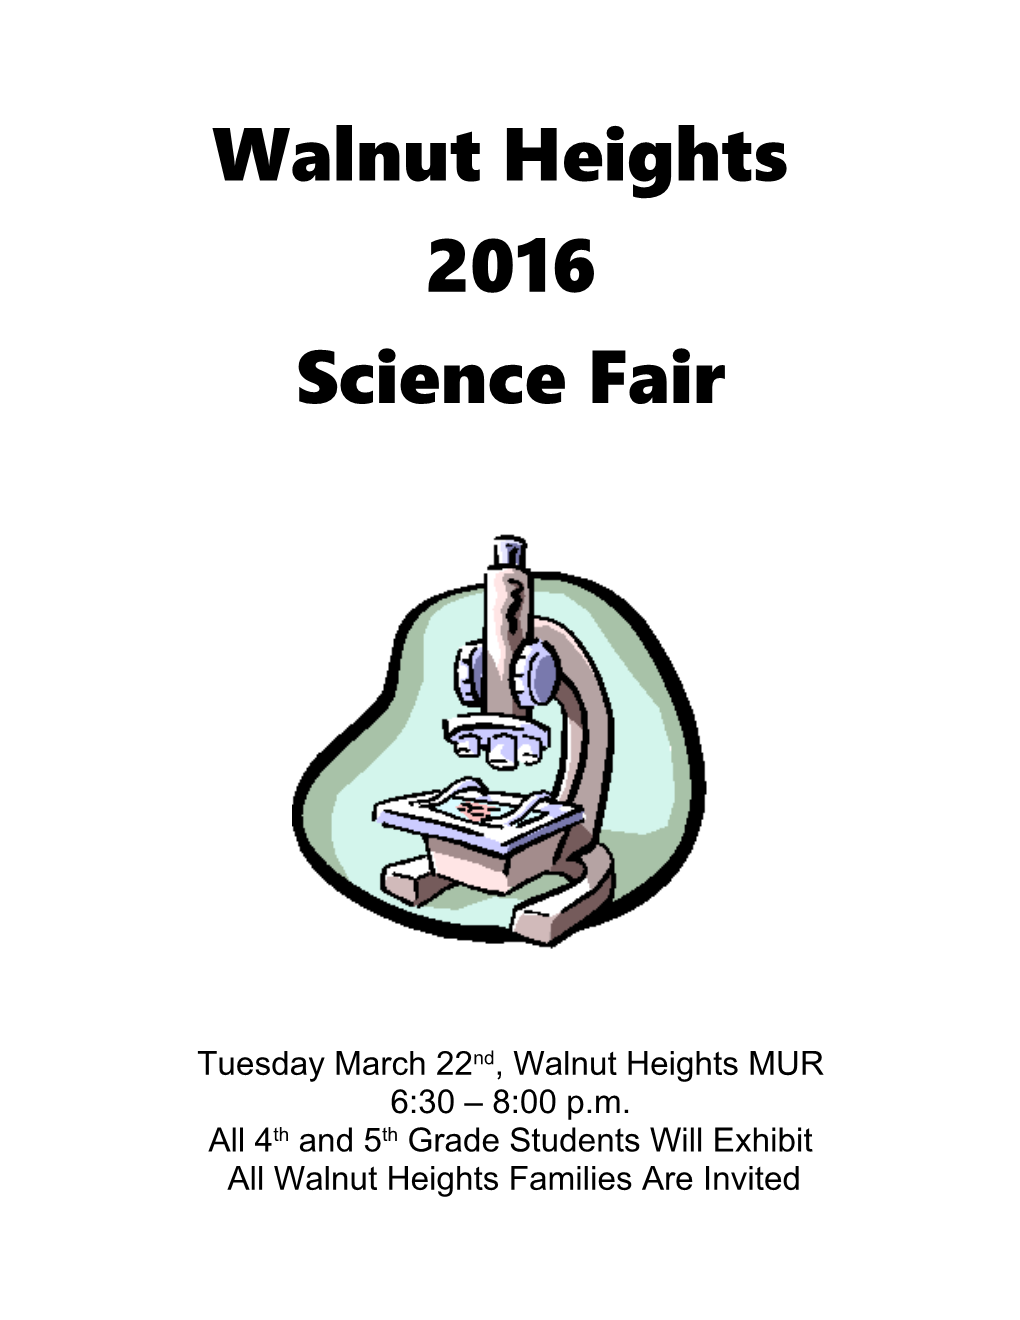 Tuesdaymarch 22Nd, Walnut Heights MUR